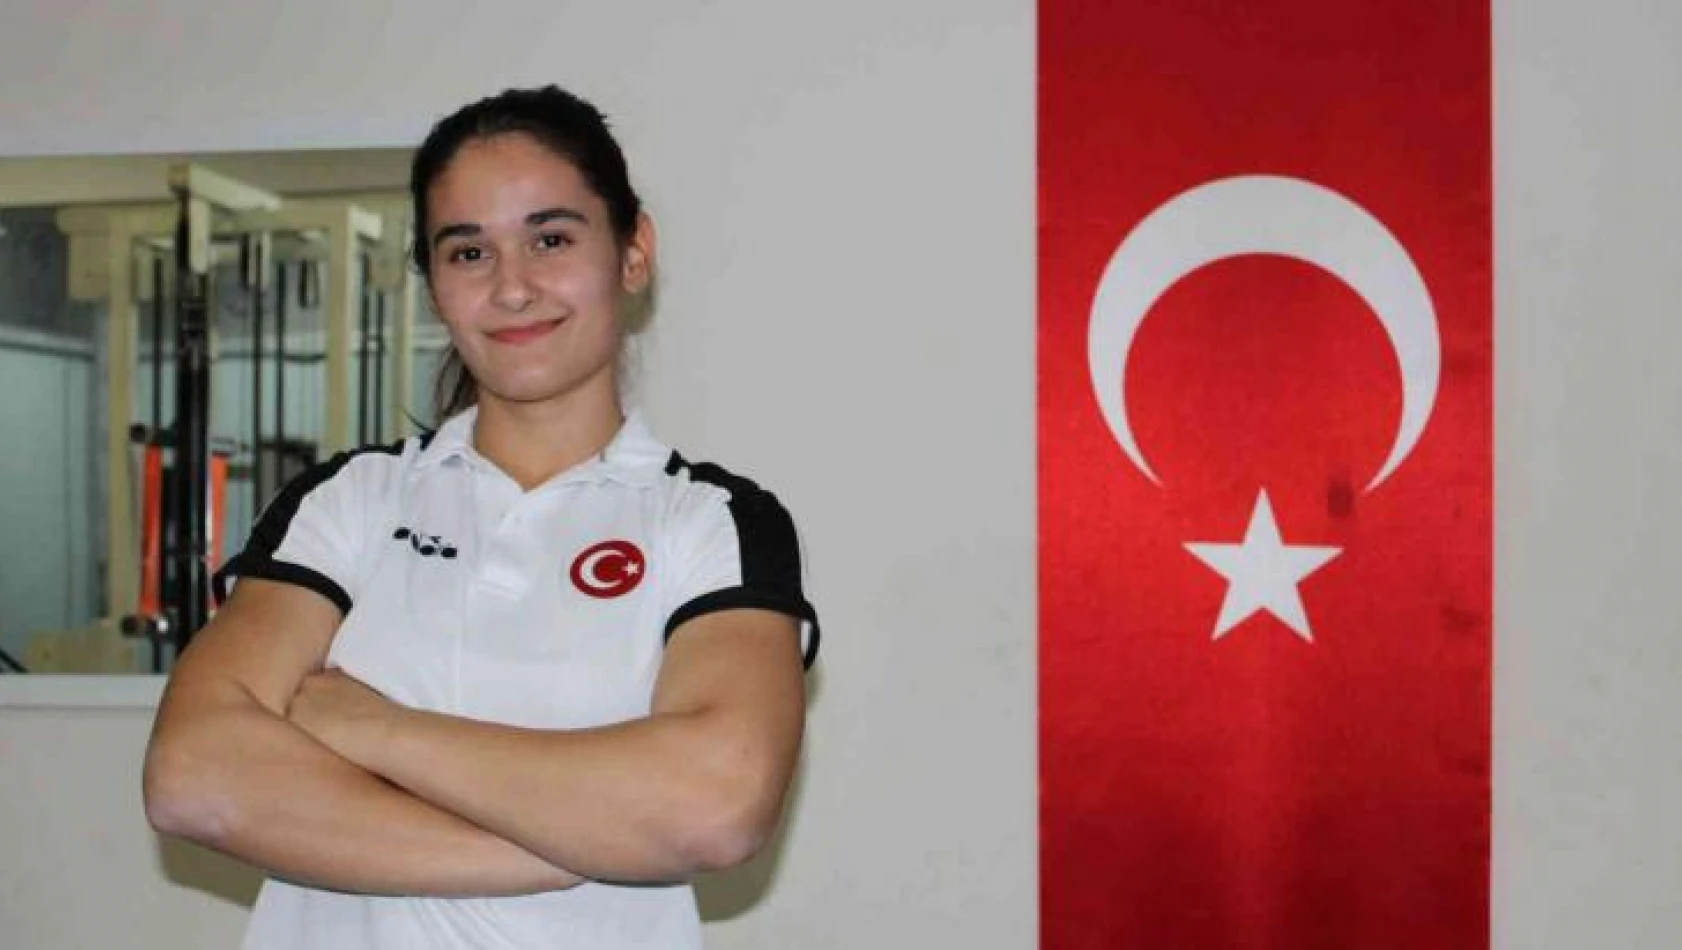 Bilek güreşçileri Türk bayrağını olimpiyatlarda da temsil etmek istiyorlar